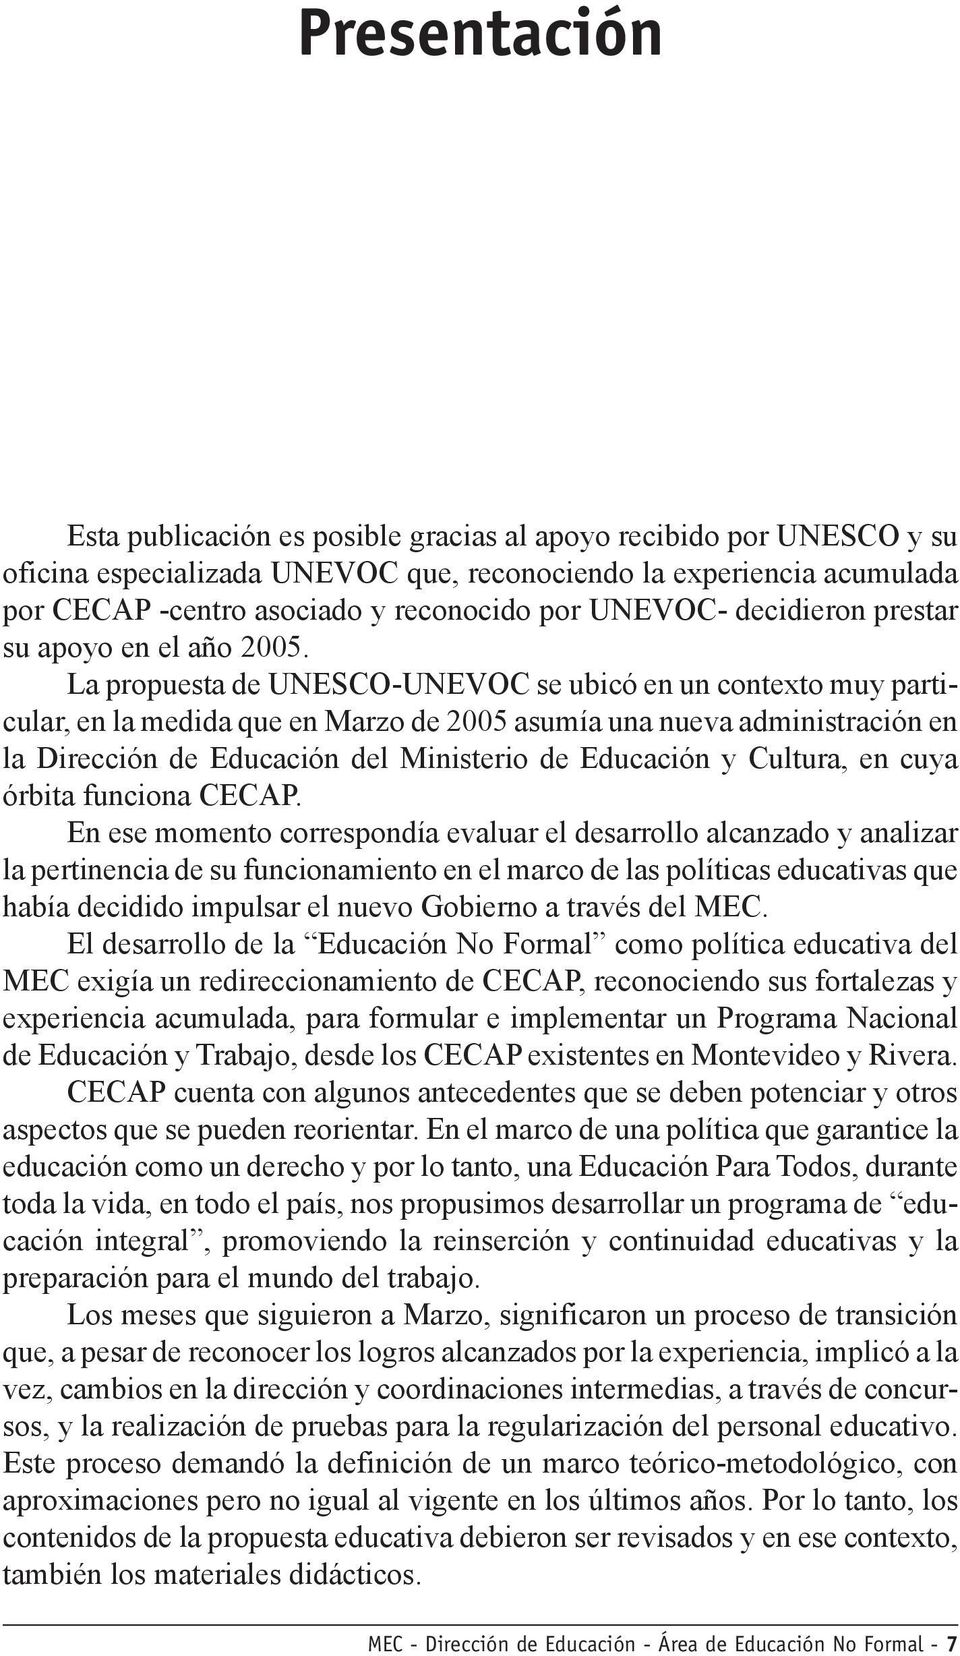 La propuesta de UNESCO-UNEVOC se ubicó en un contexto muy particular, en la medida que en Marzo de 2005 asumía una nueva administración en la Dirección de Educación del Ministerio de Educación y